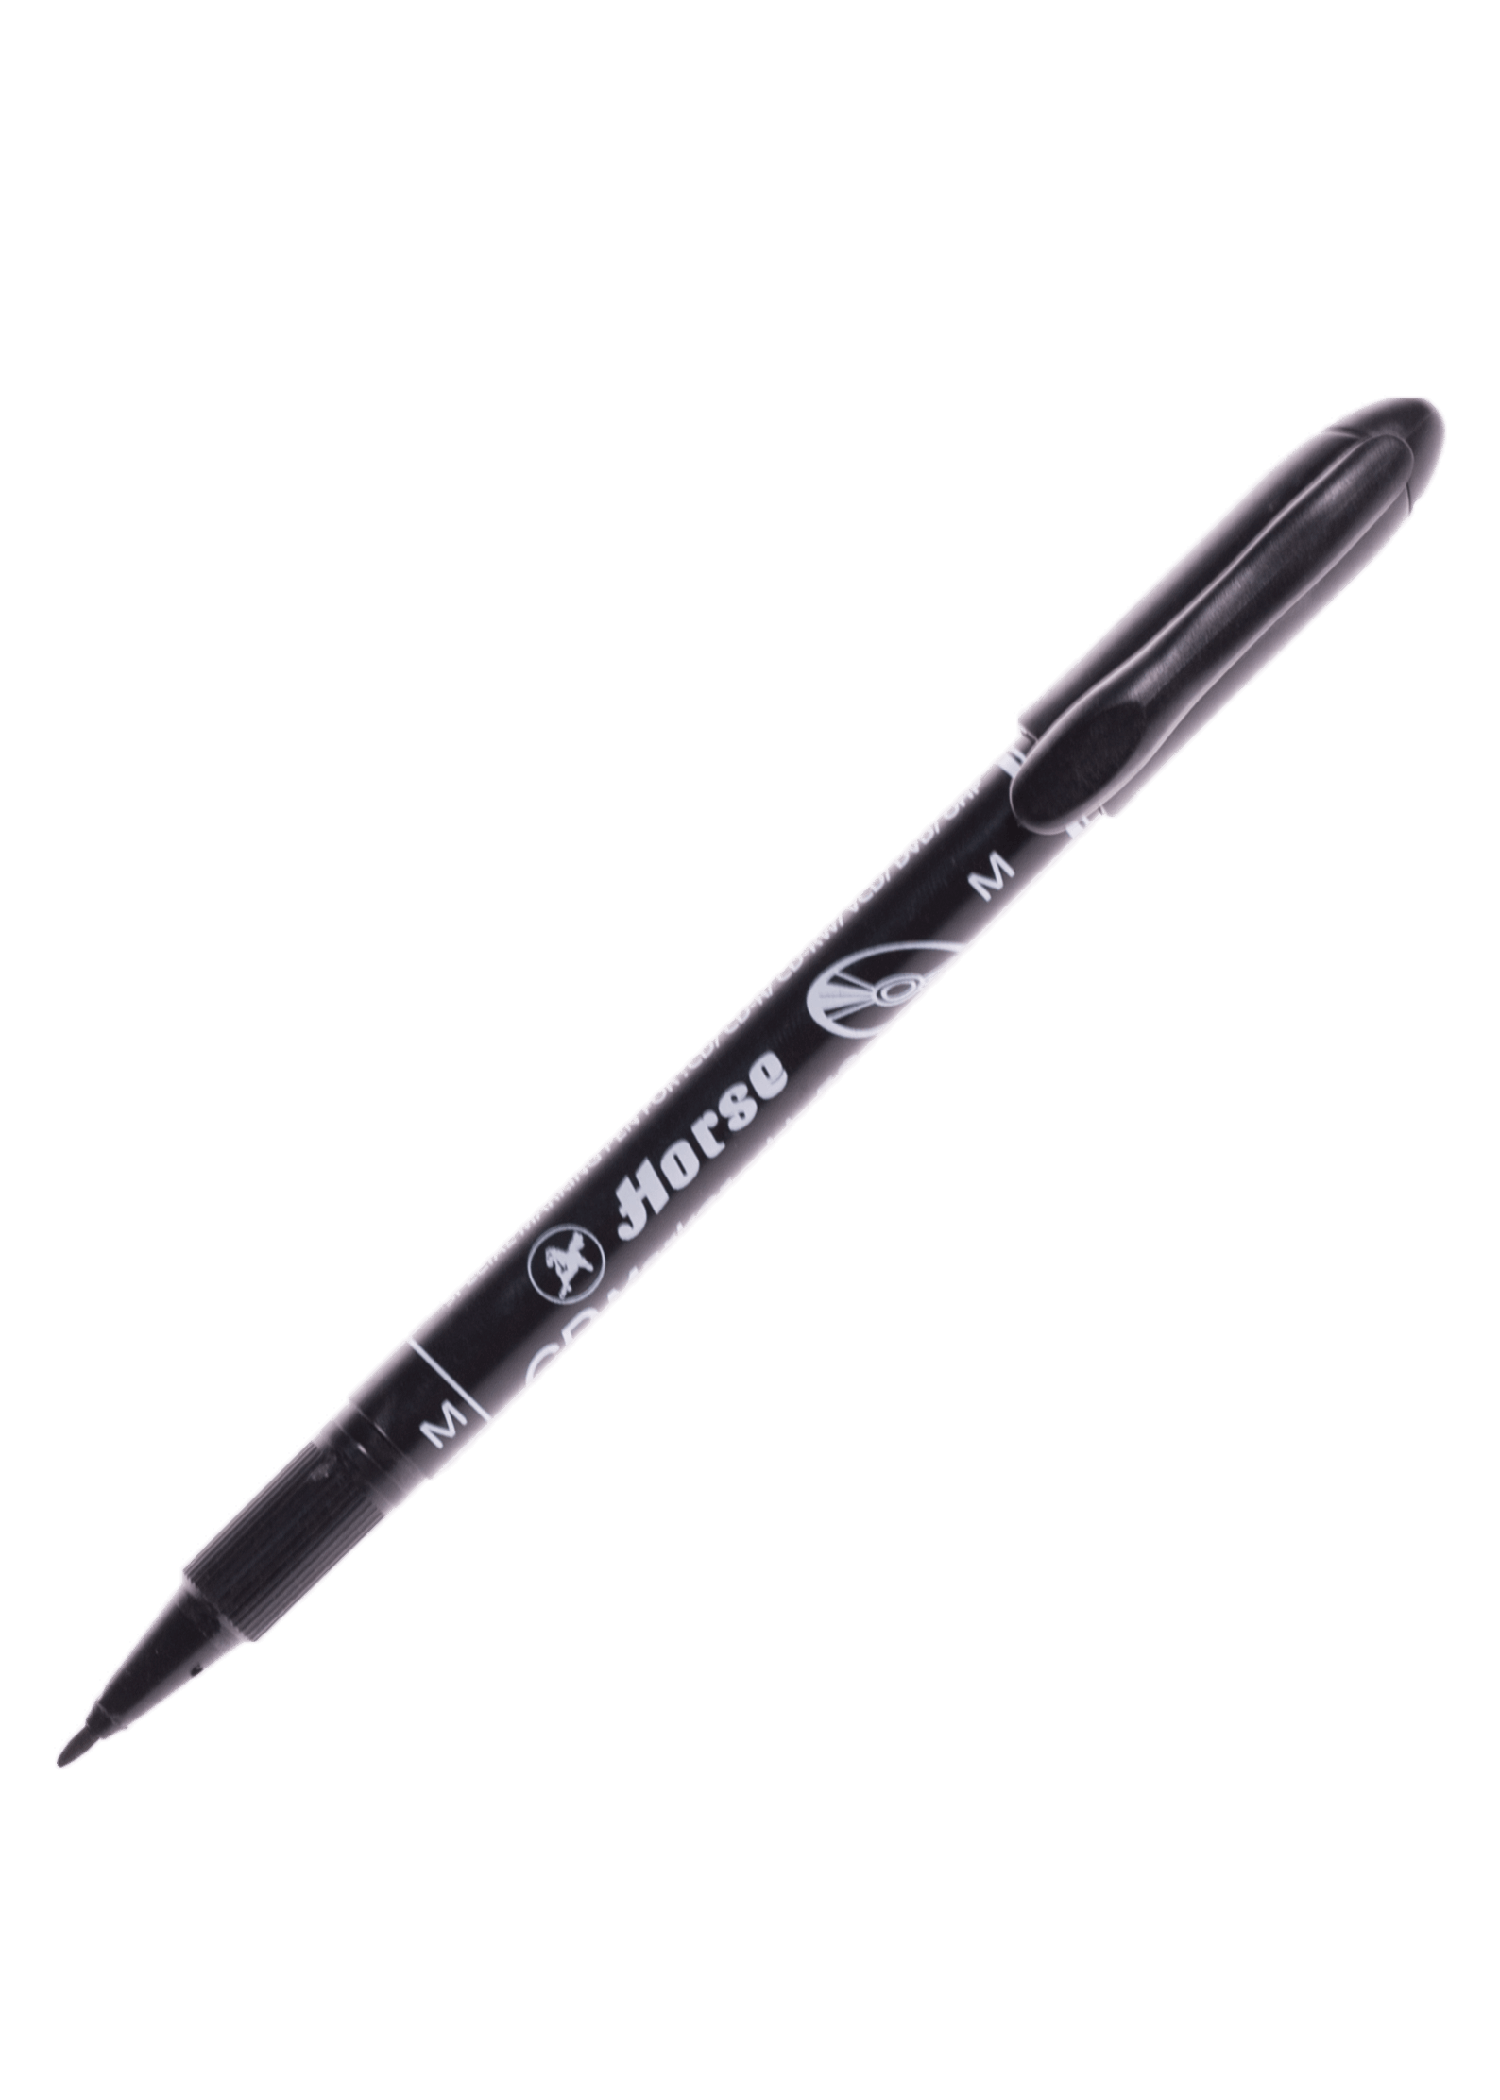 ปากกาเขียน CD ลบไม่ได้ ตราม้า H-52 (M) สีดำ 1.0 มม.